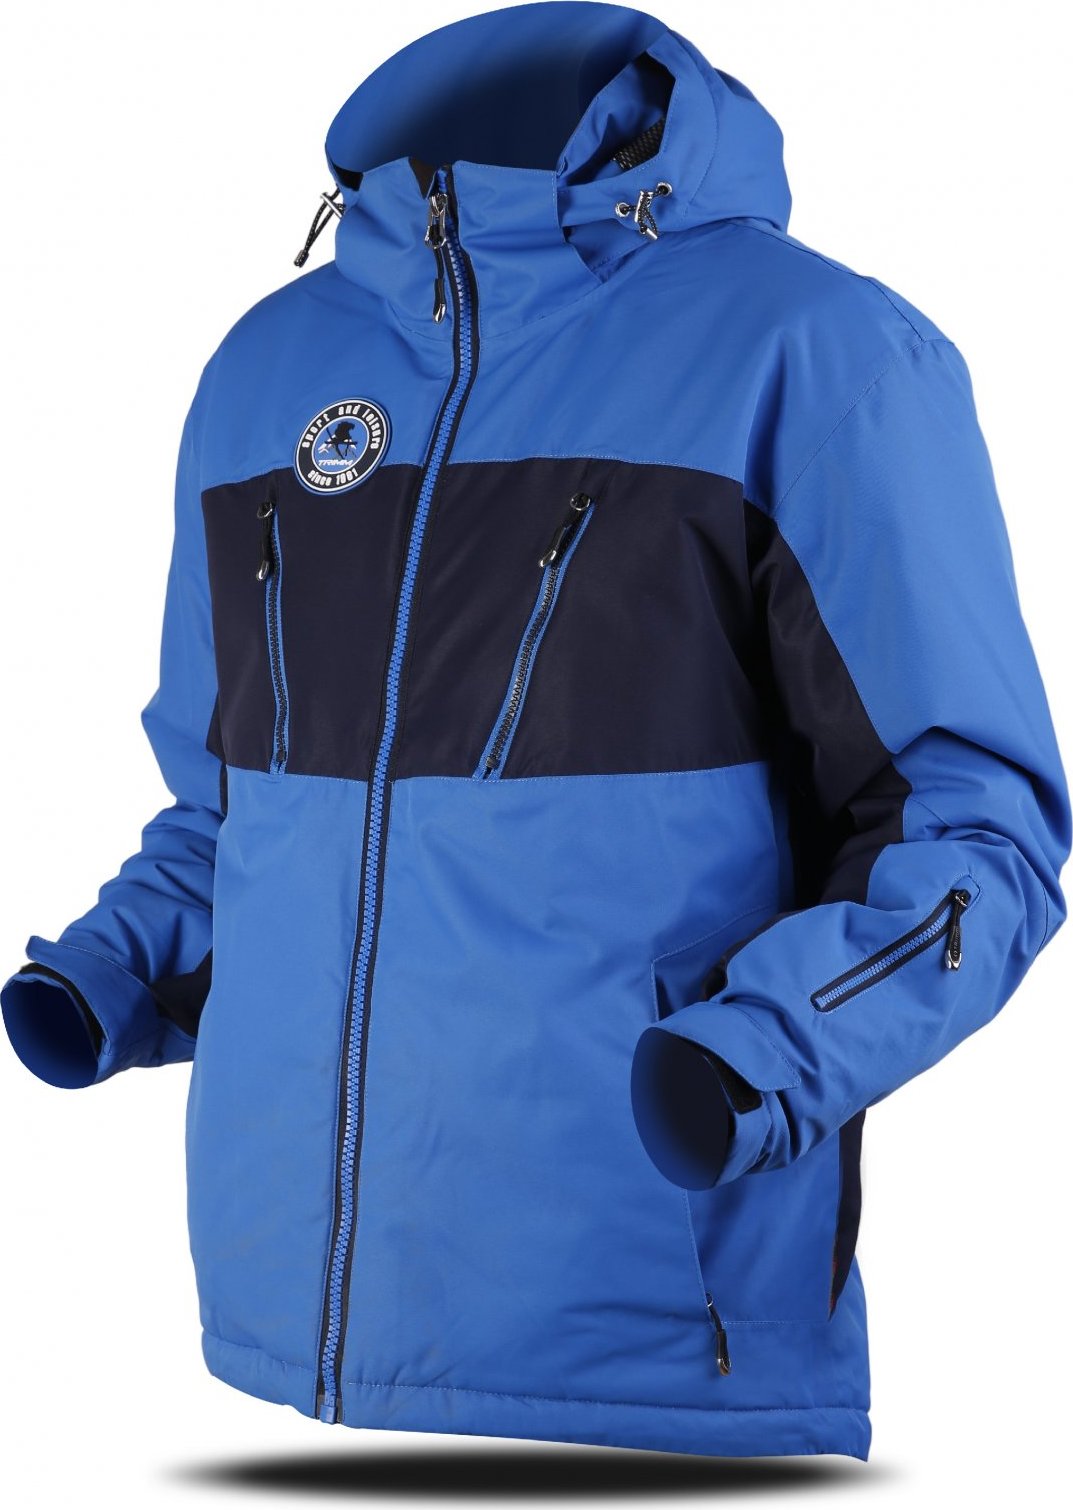 Pánská lyžařská bunda TRIMM Dynamit modrá Velikost: M, Barva: jeans blue/ navy